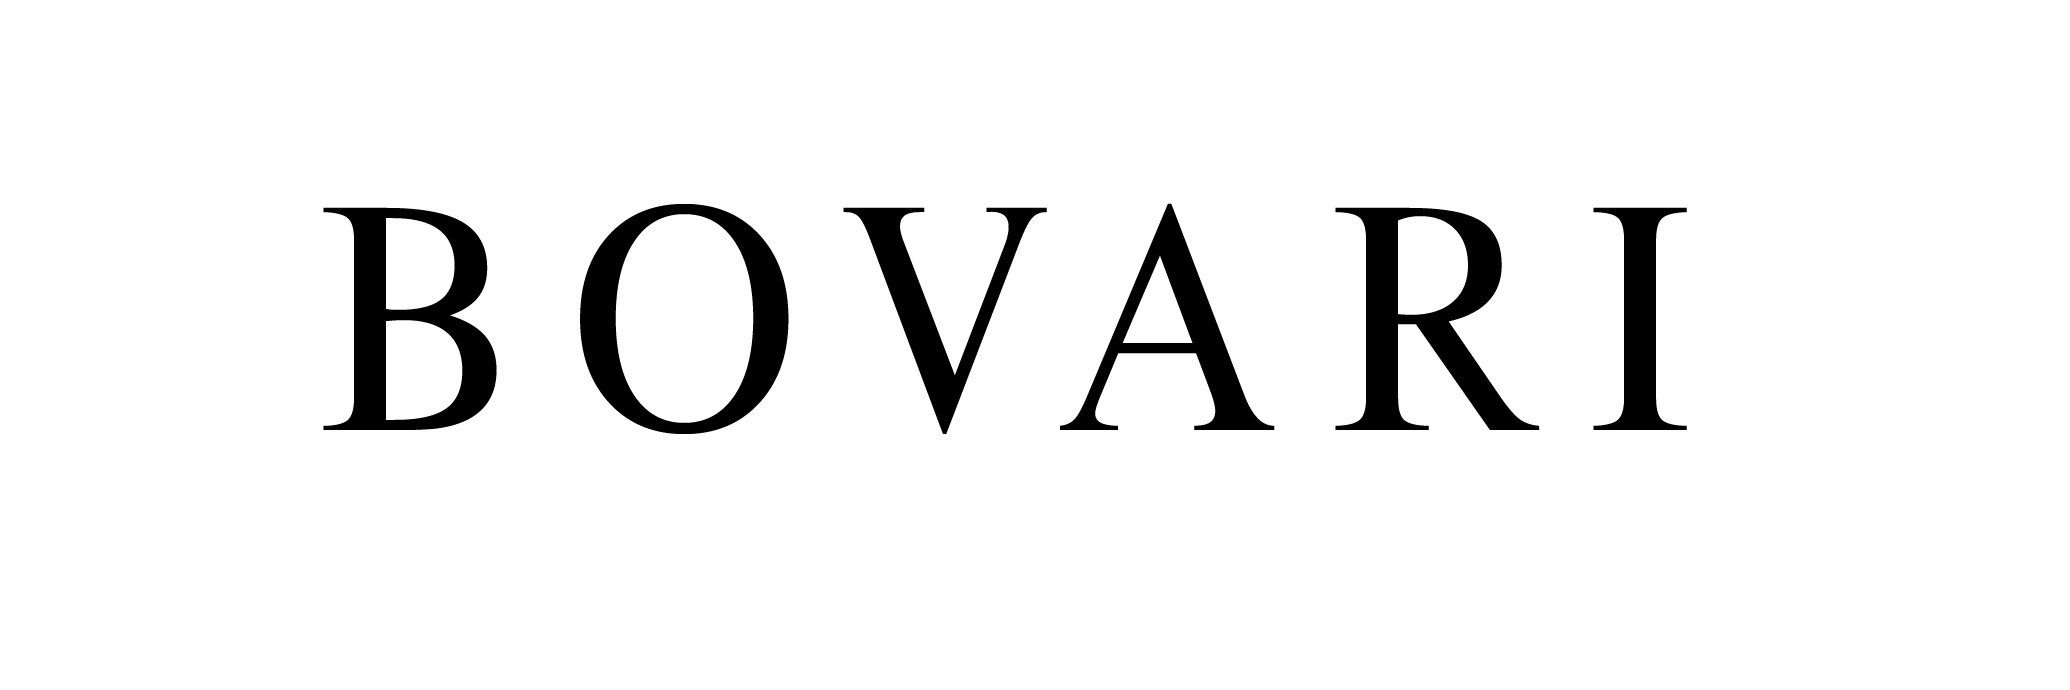 Bovari